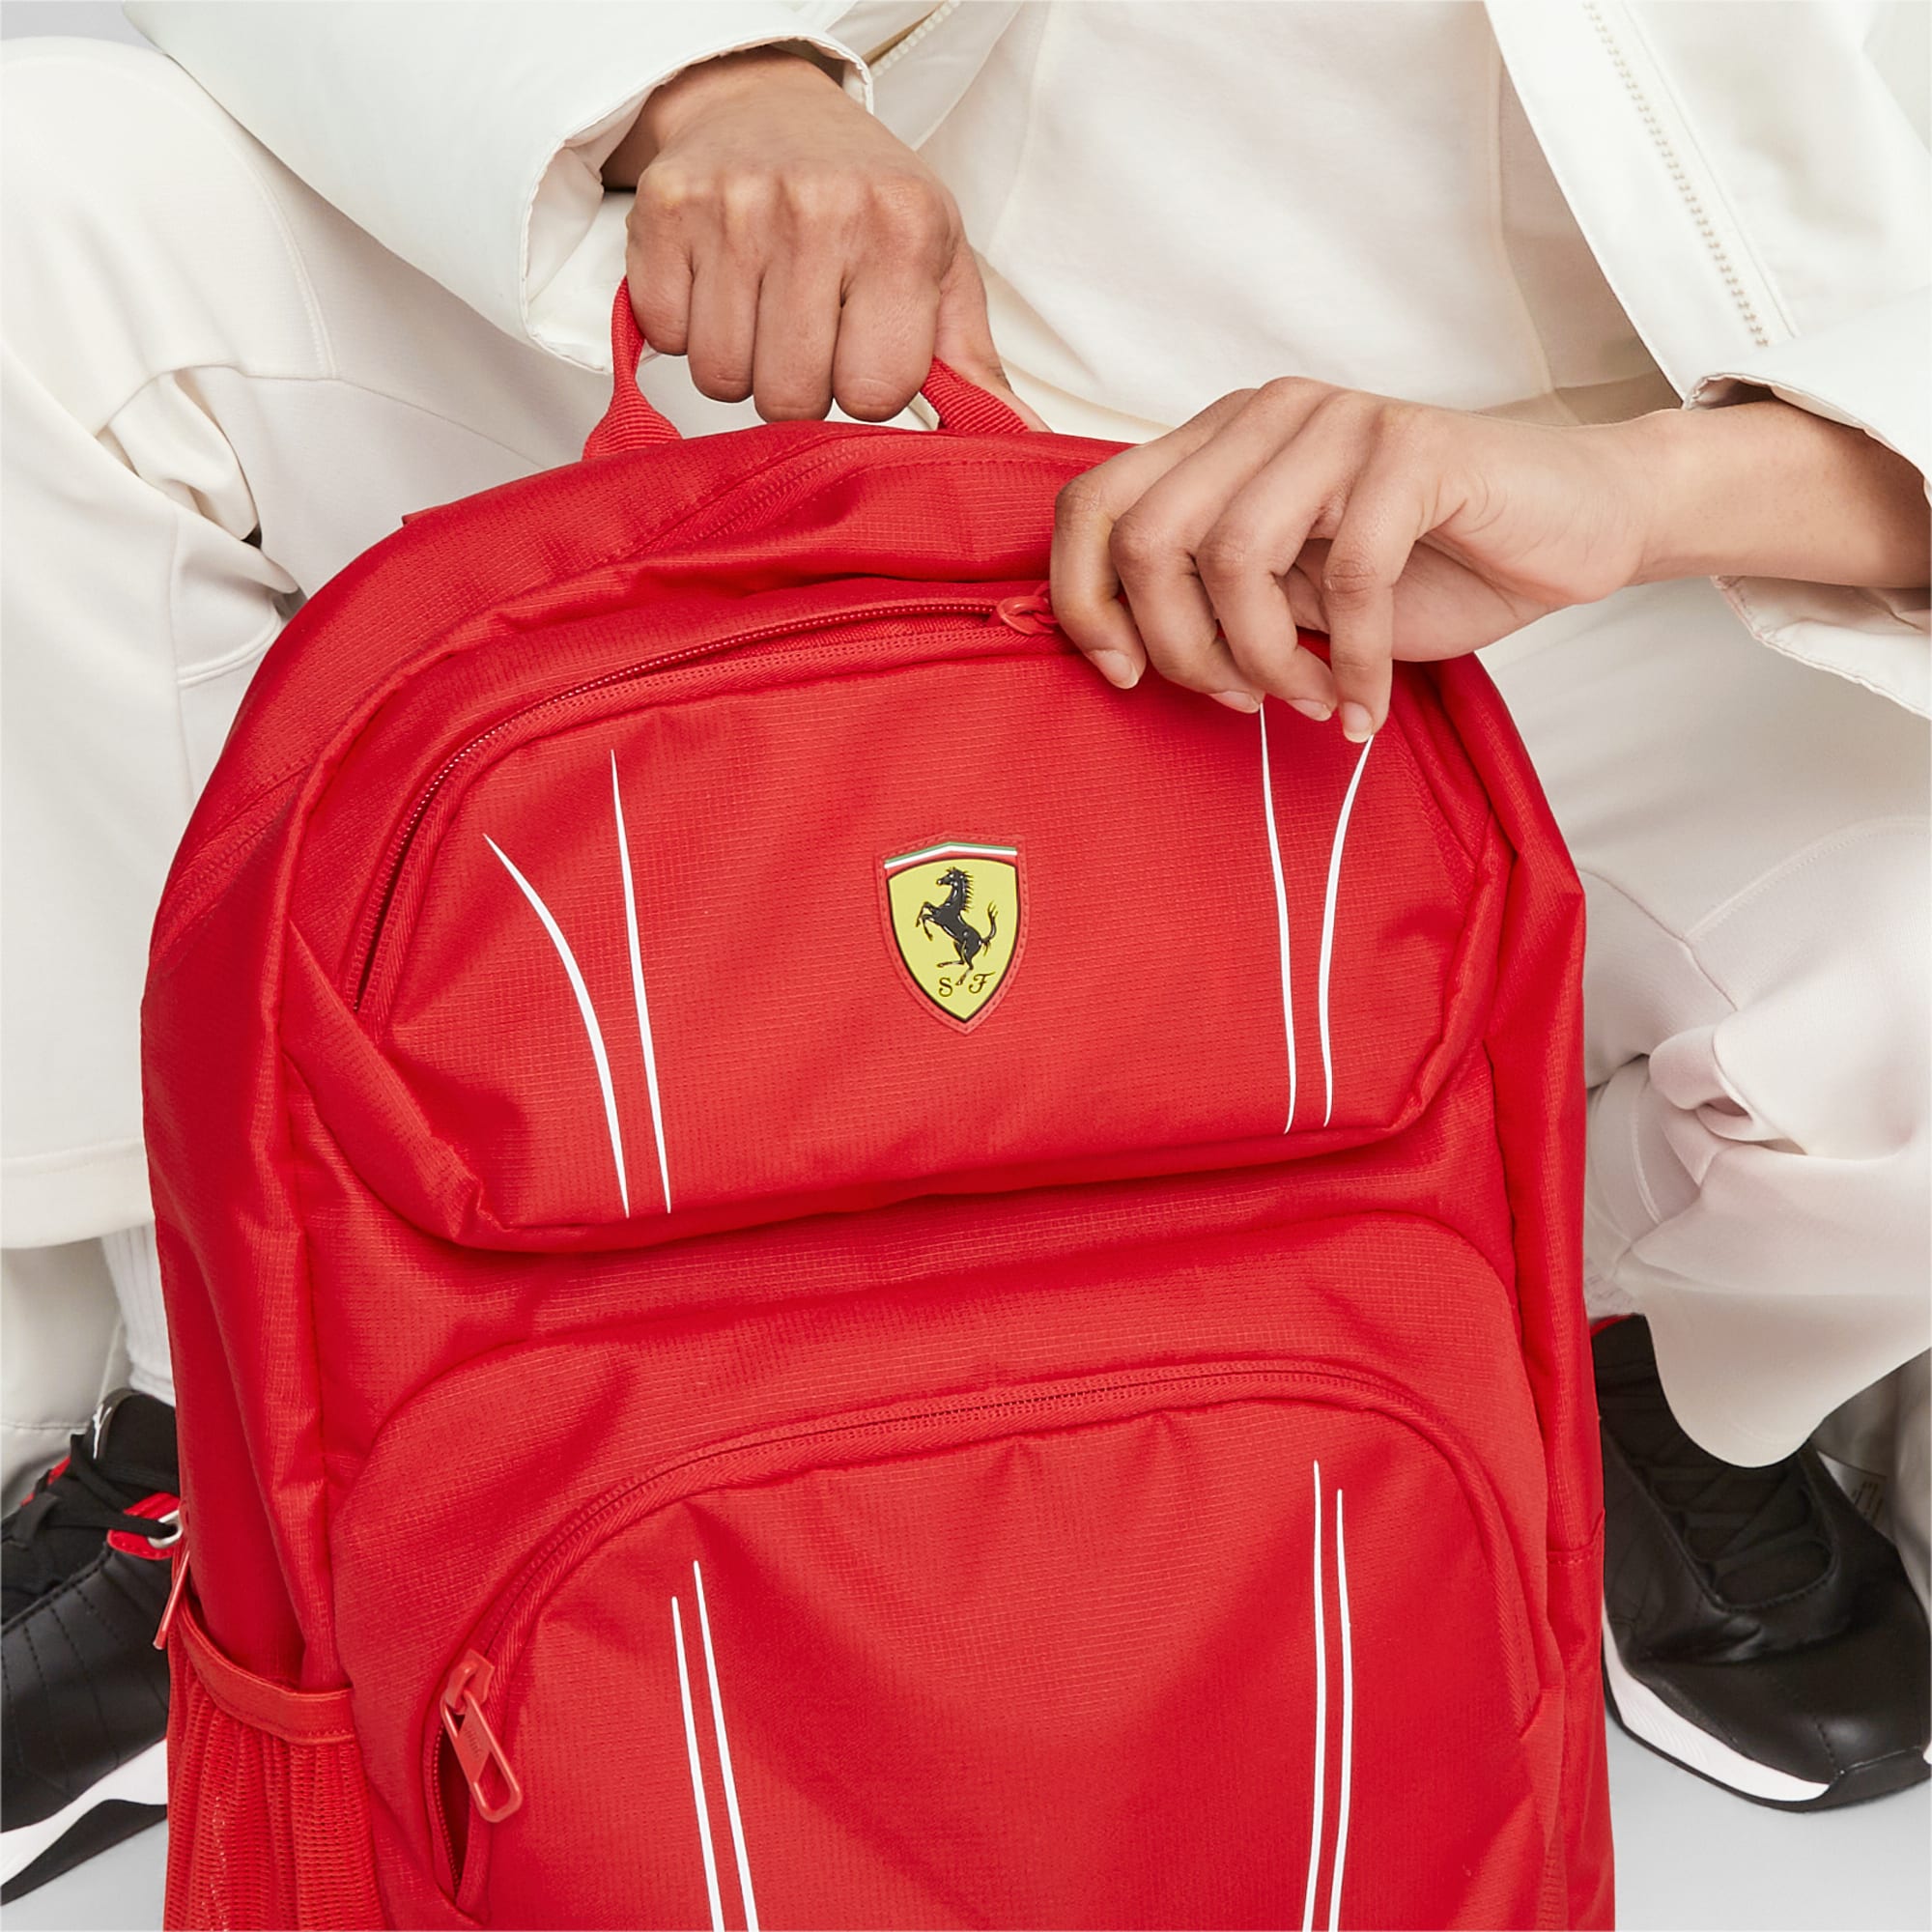 Women's PUMA Scuderia Ferrari Sptwr Race Backpack, Red